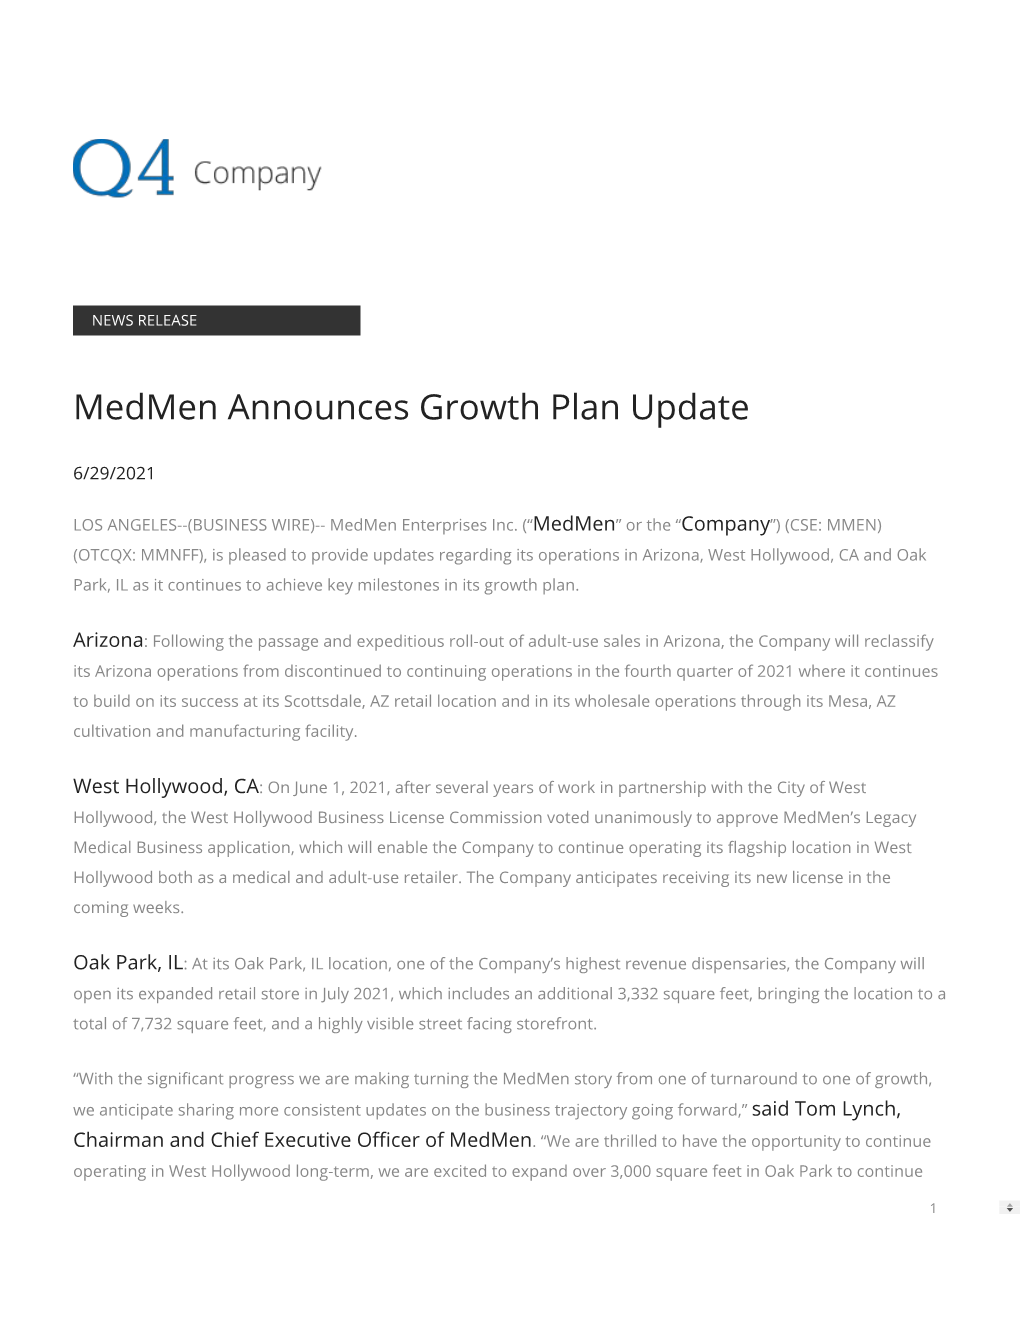 Medmen Announces Growth Plan Update